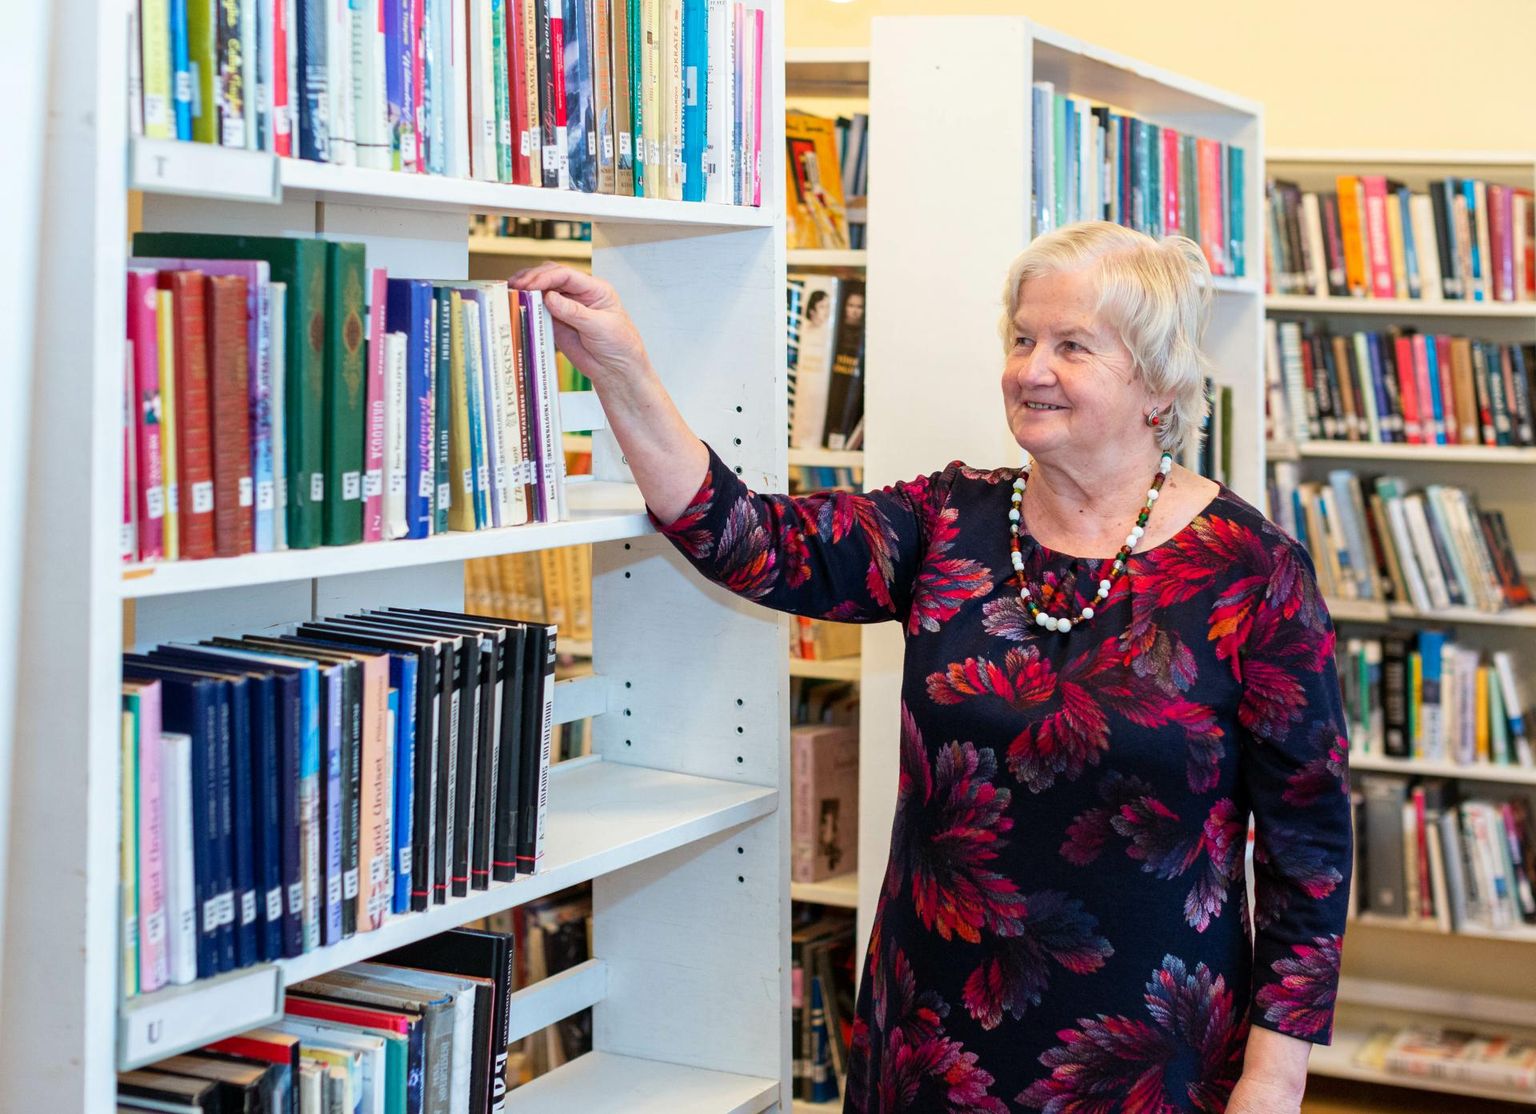 Kuldre raamatukogu juhataja Saima Tell märkis, et neil õnneks raamatuid ei varastata.